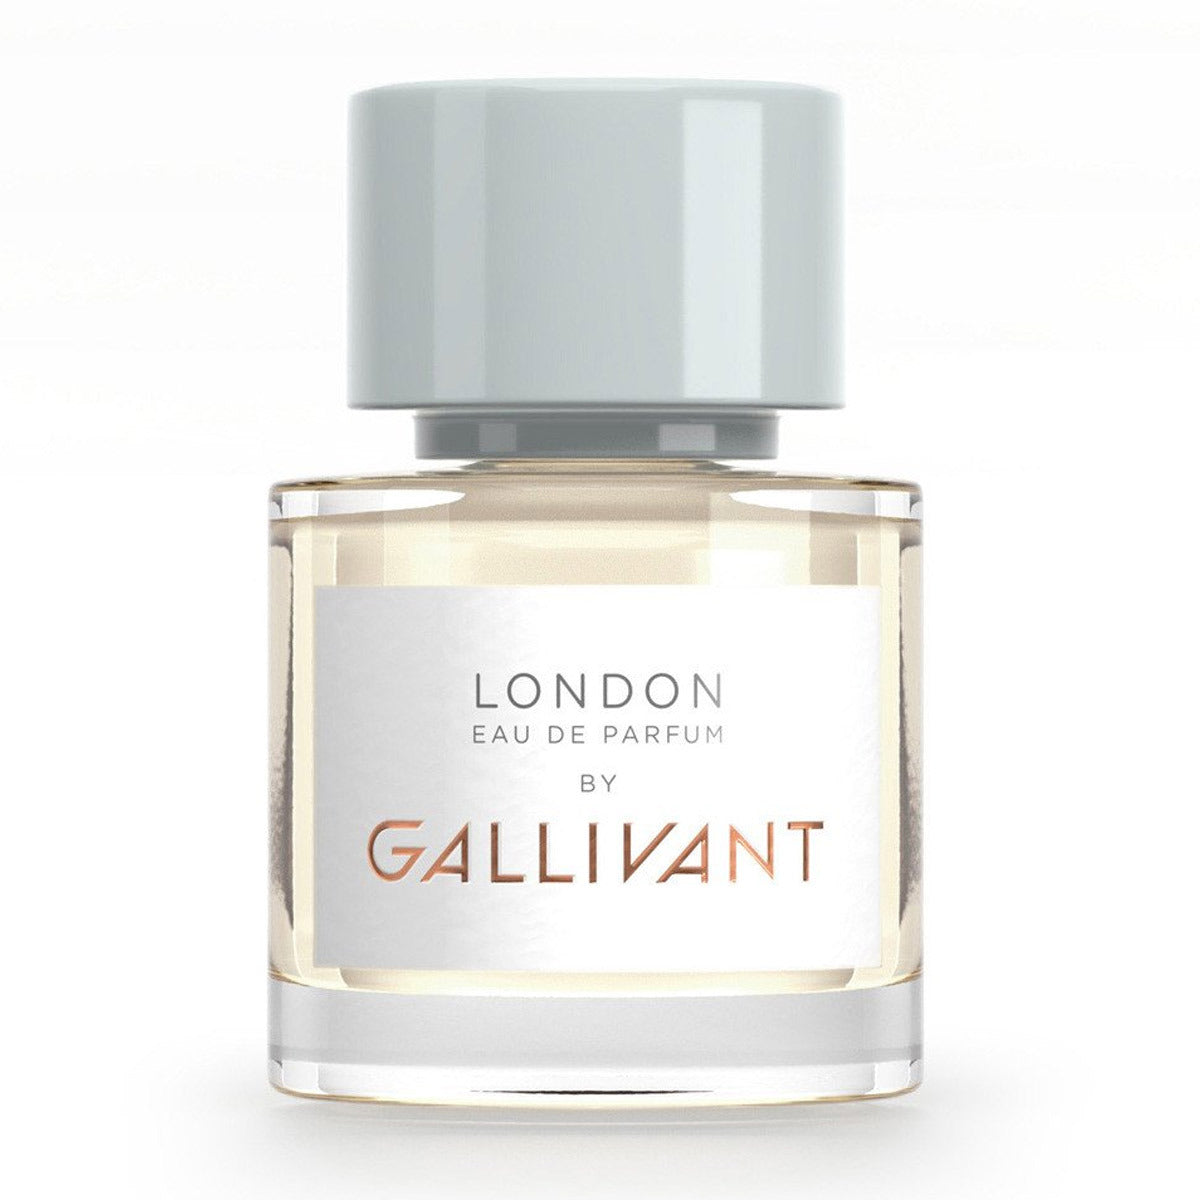 Primary image of London Eau de Parfum